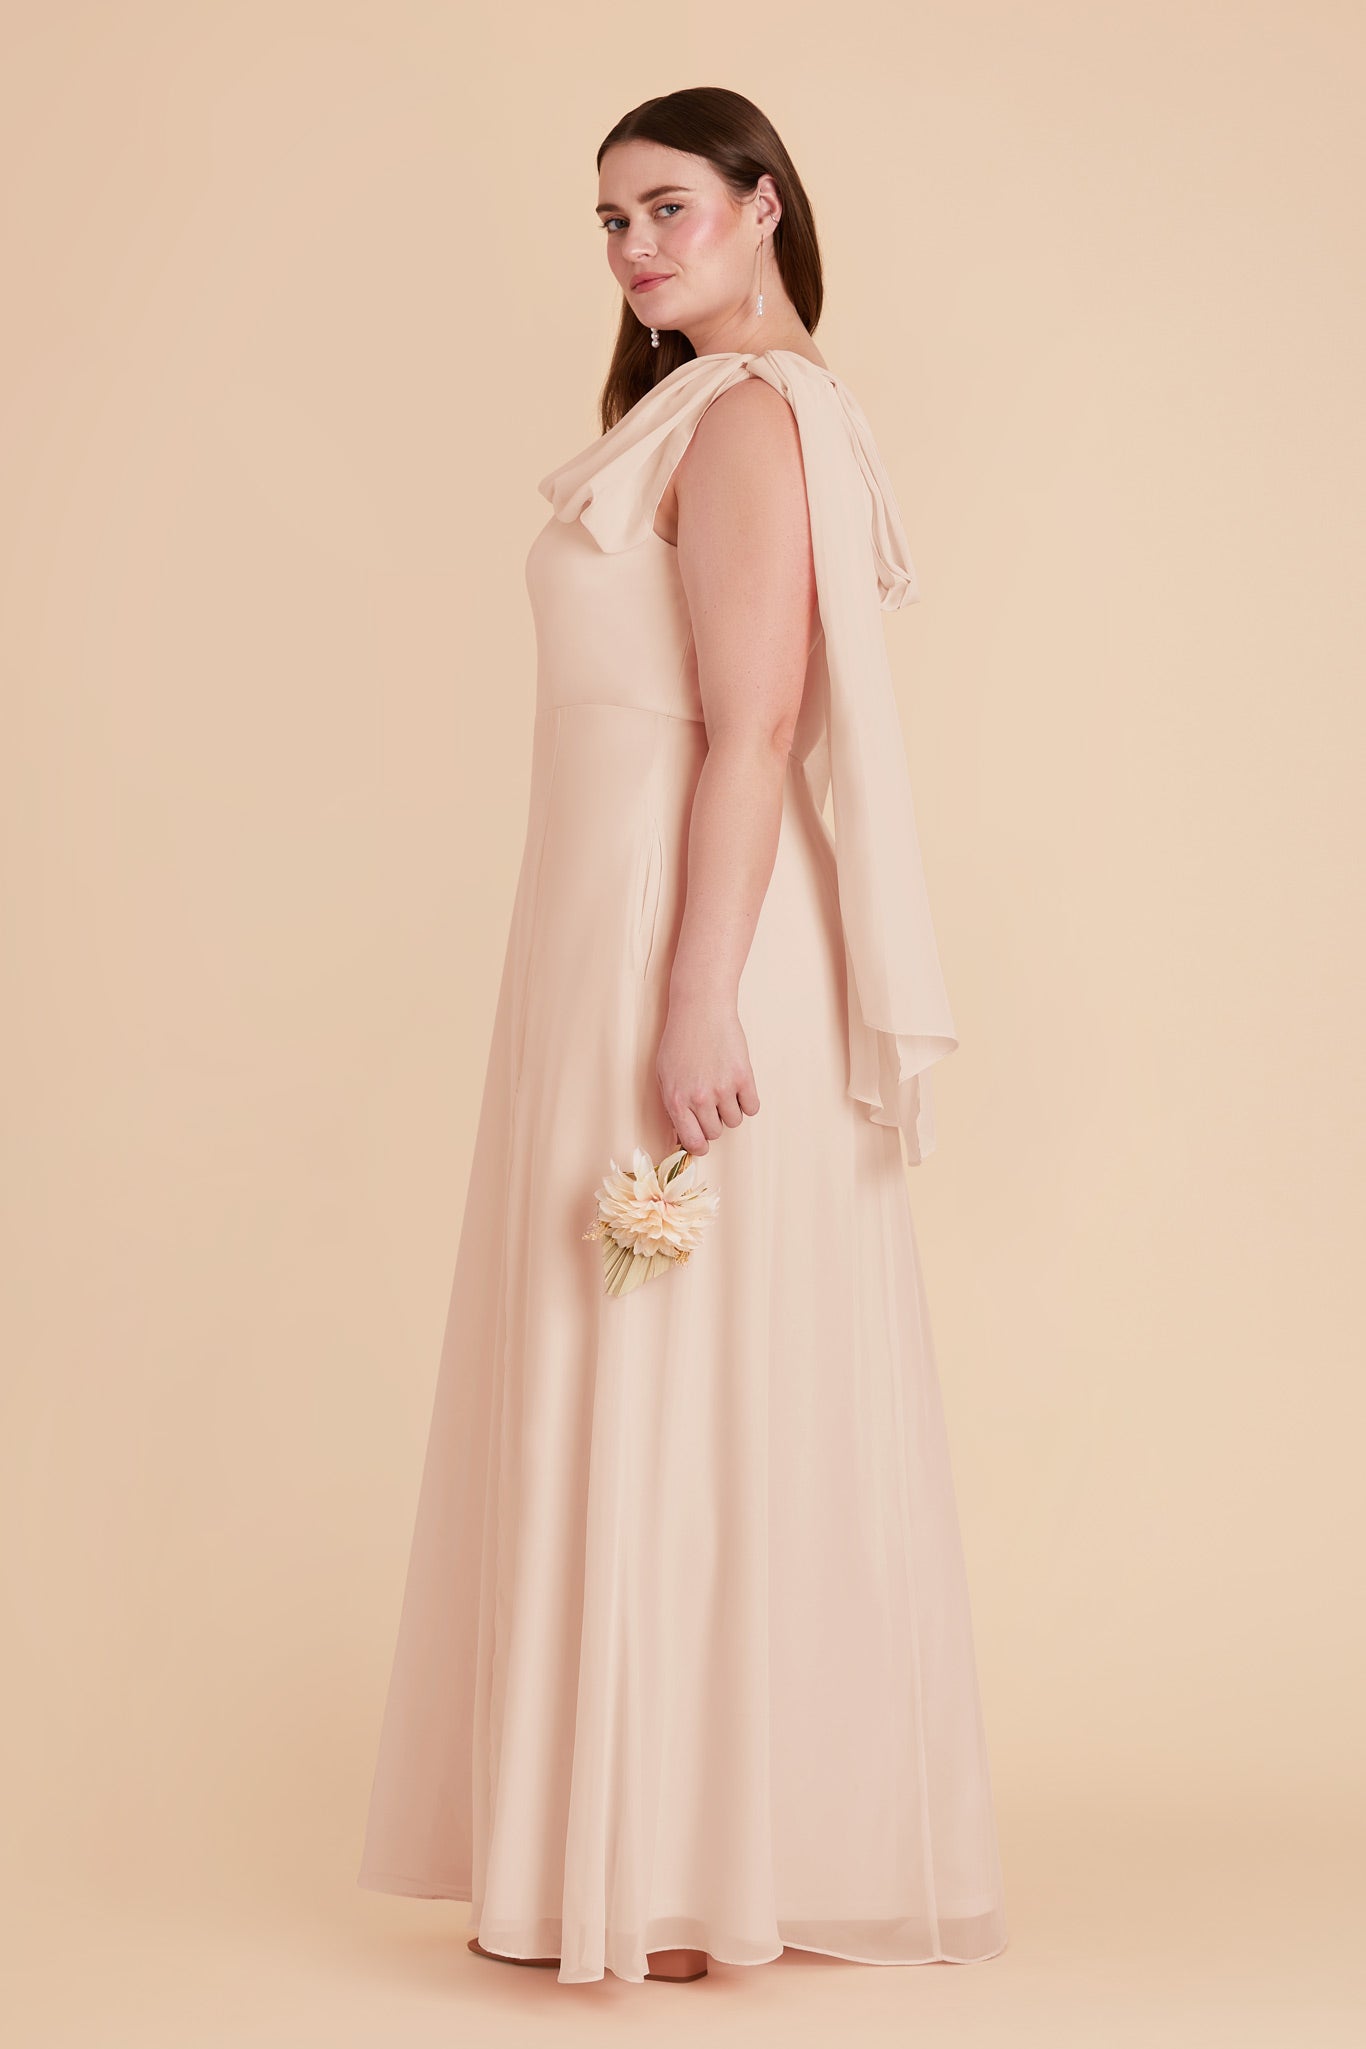 Pale Blush Melissa Chiffon Dress by Birdy Grey